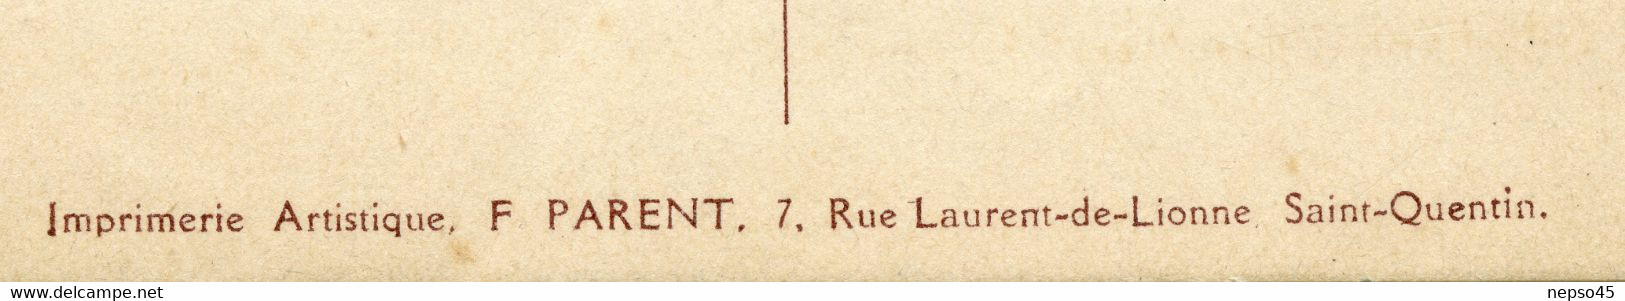 Carillonneur Gustave Cantelon.Saint-Quentin.souvenir Des Fêtes Du Carillon Juin 1924.sonnerie Sanche Réglée Par Cantelon - Inauguraciones